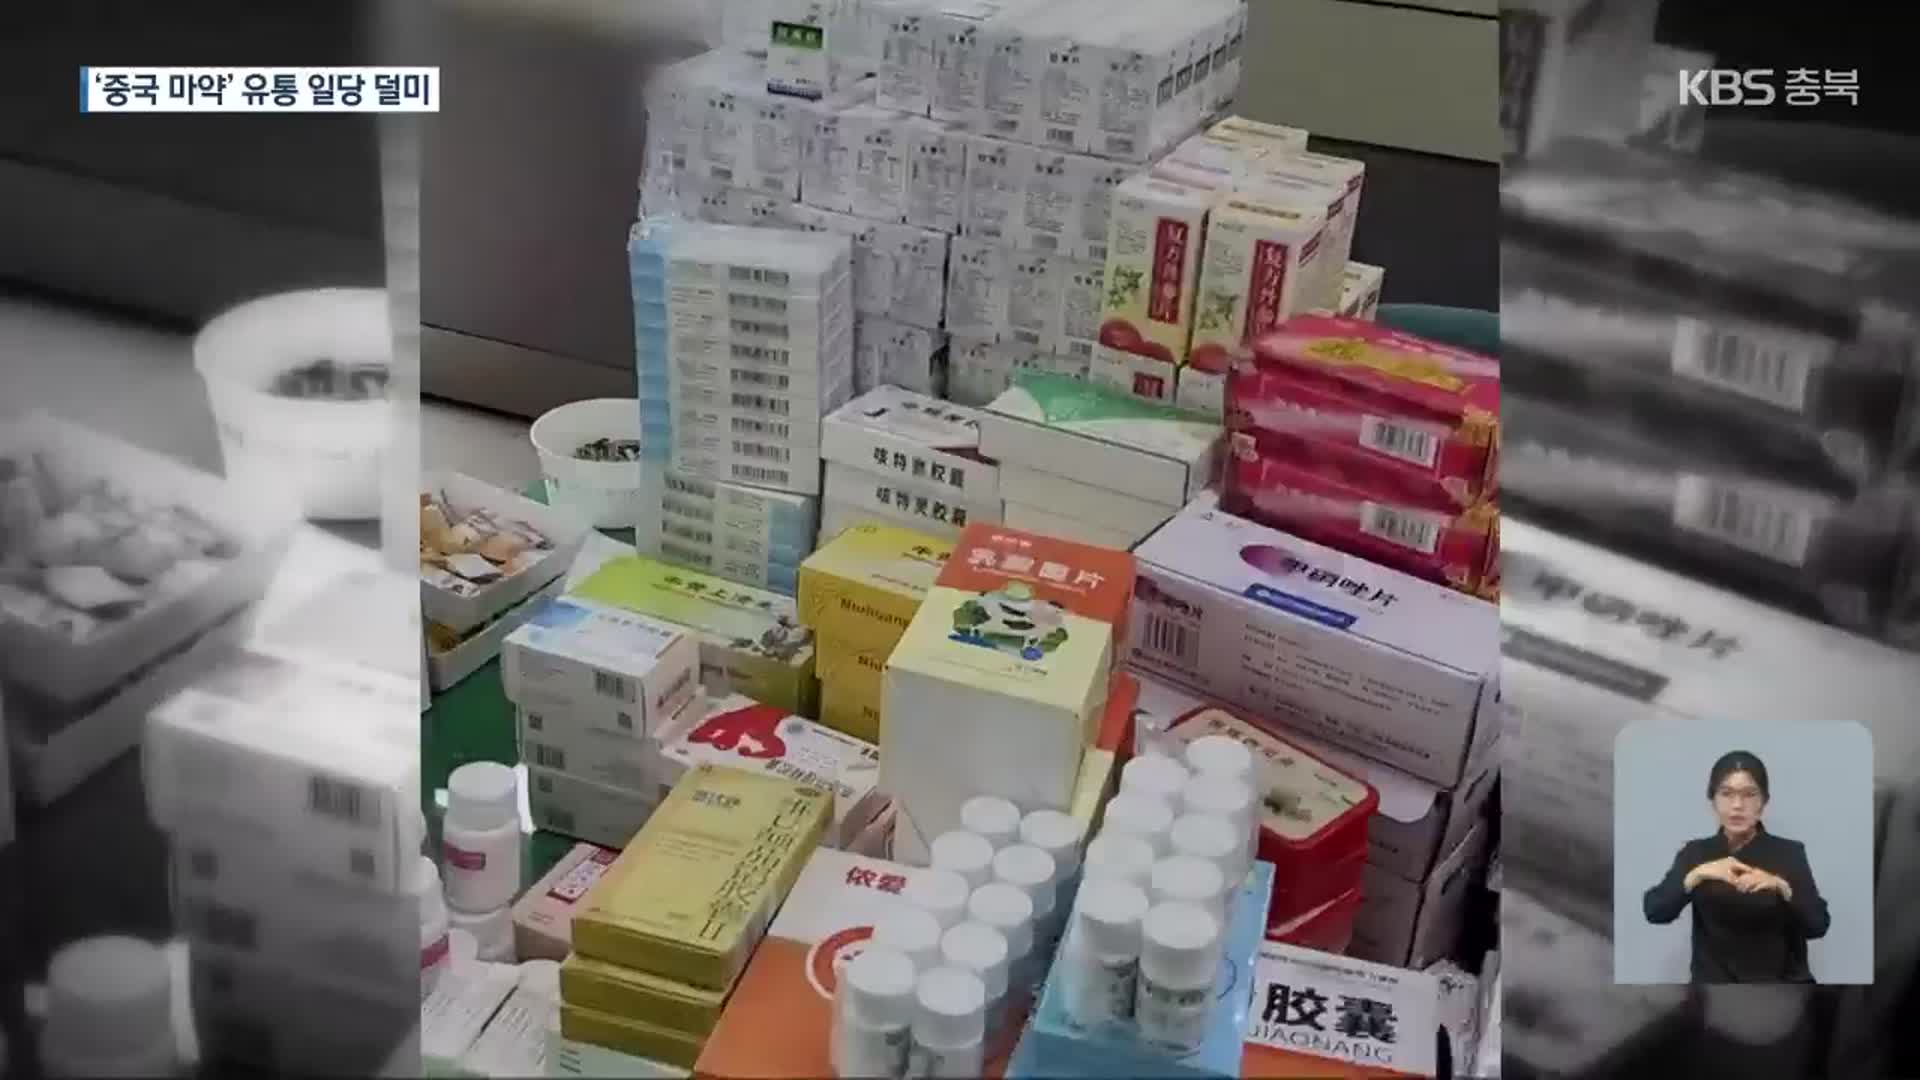 ‘중국산 마약류’ 밀반입…감기약으로 판매한 일당 덜미